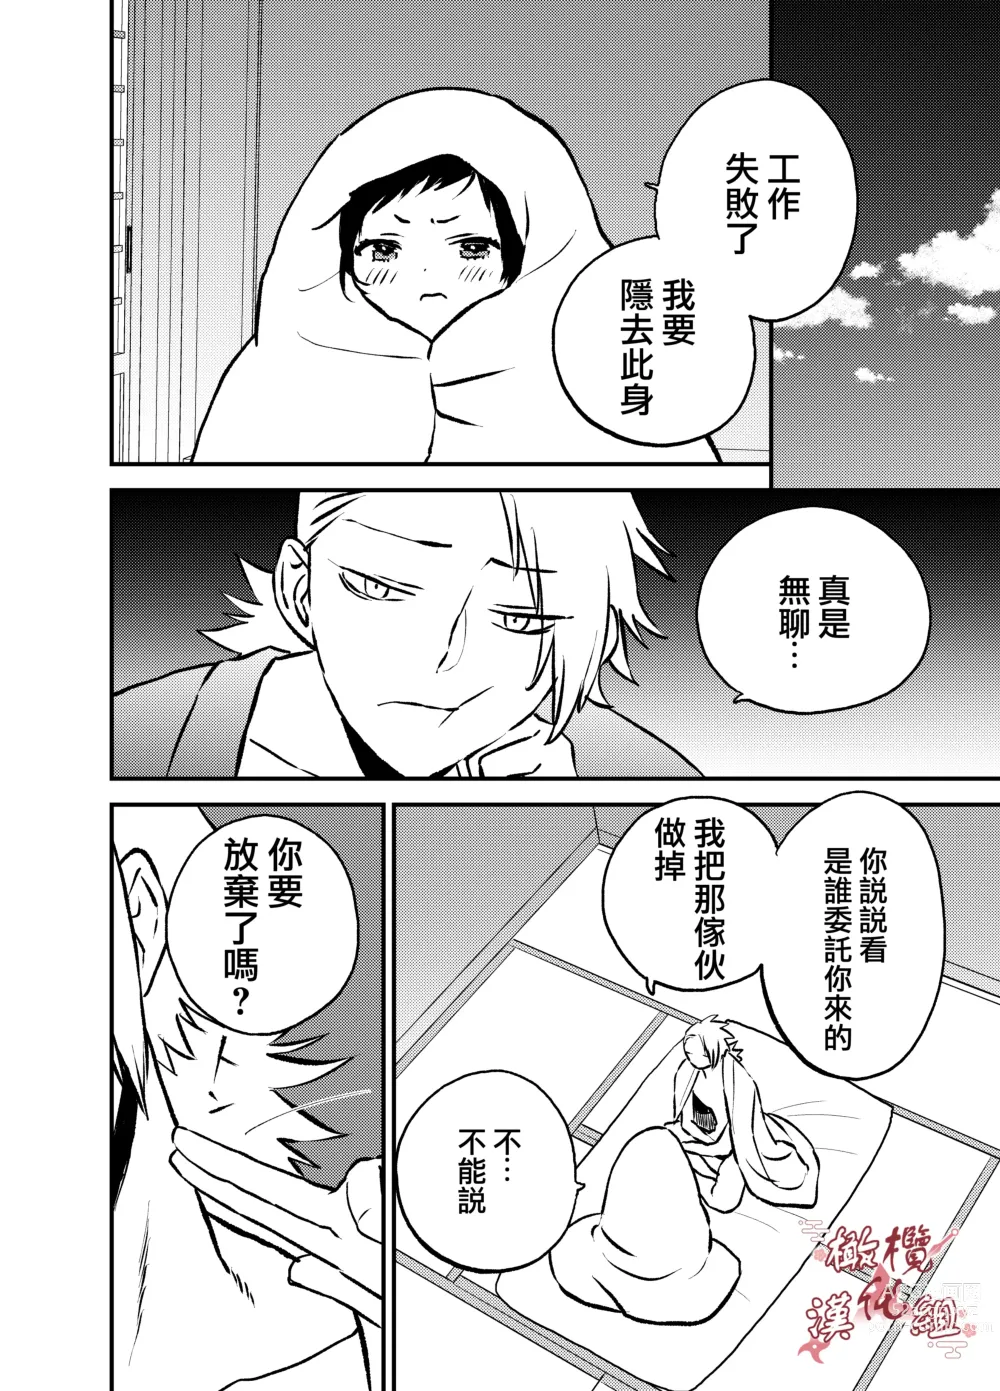 Page 25 of doujinshi 忍者鹤城